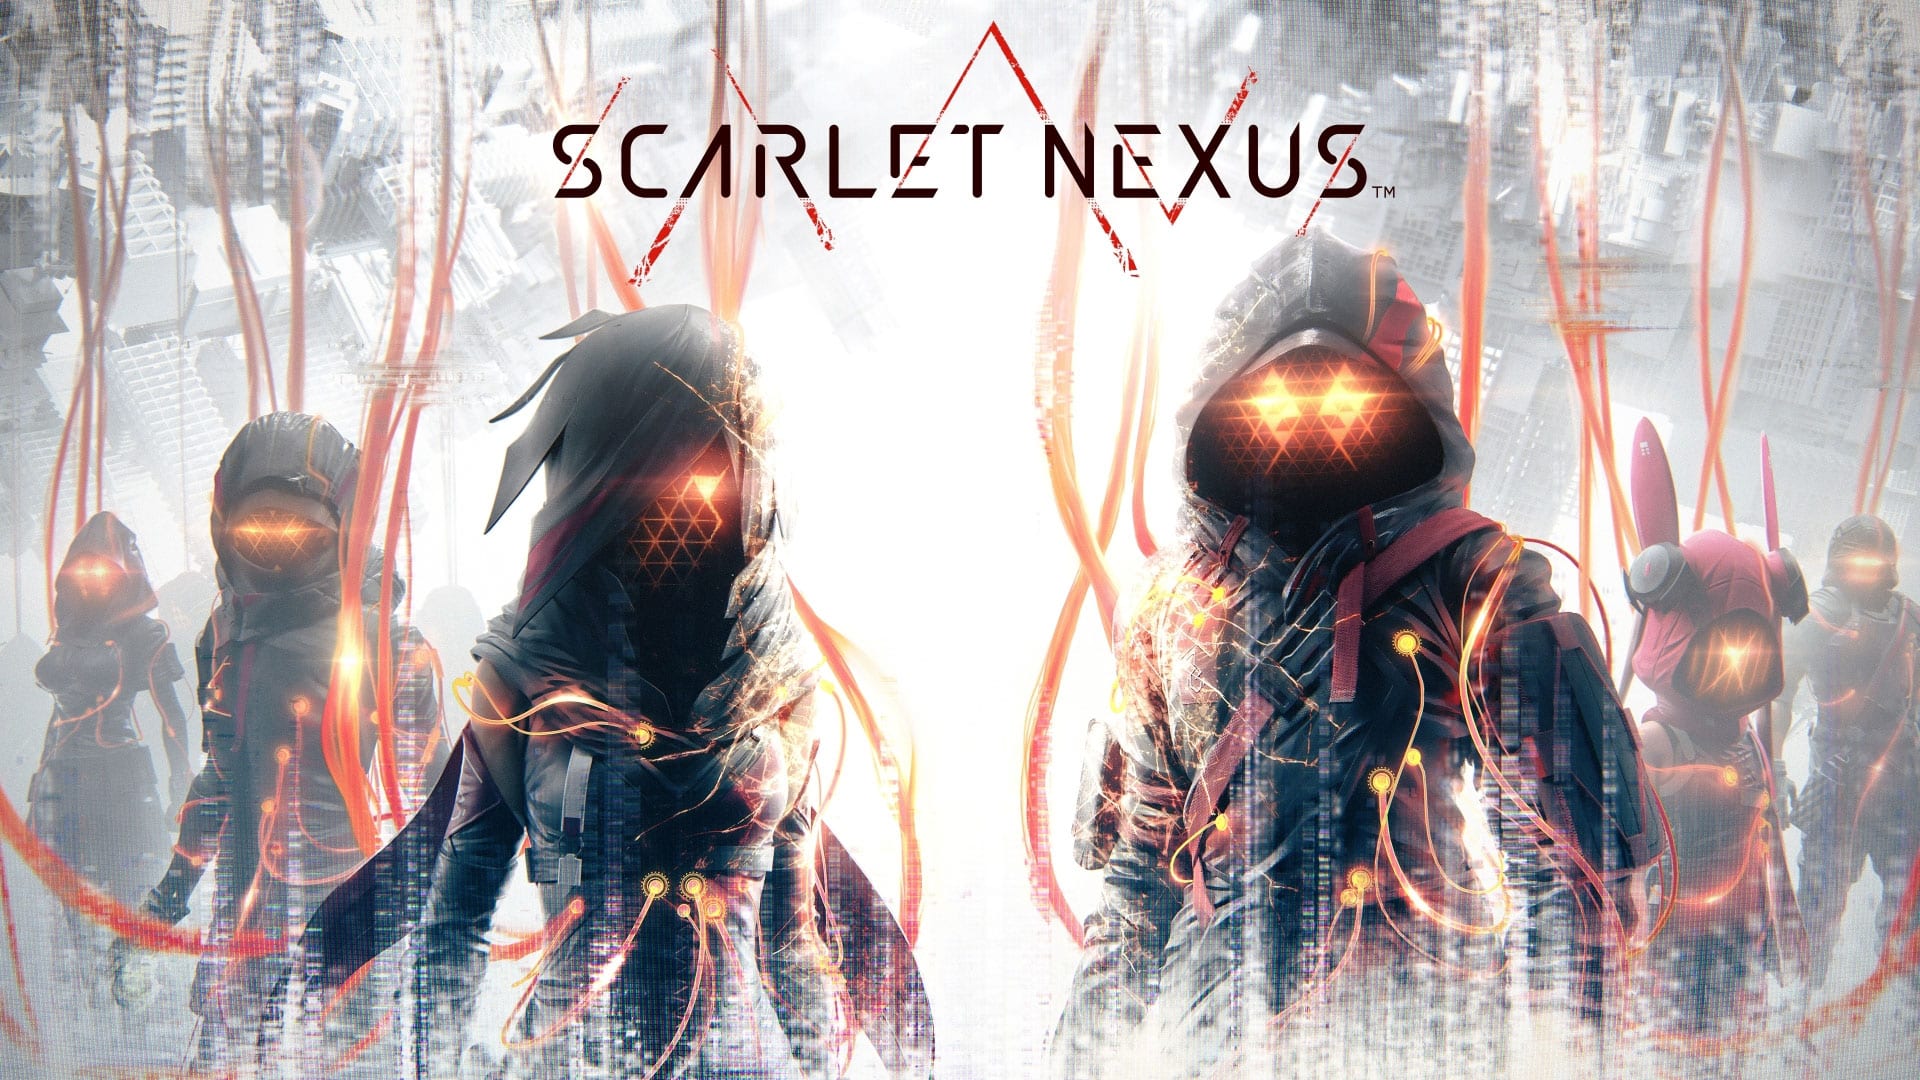 خرید بازی Scarlet Nexus برای PS5